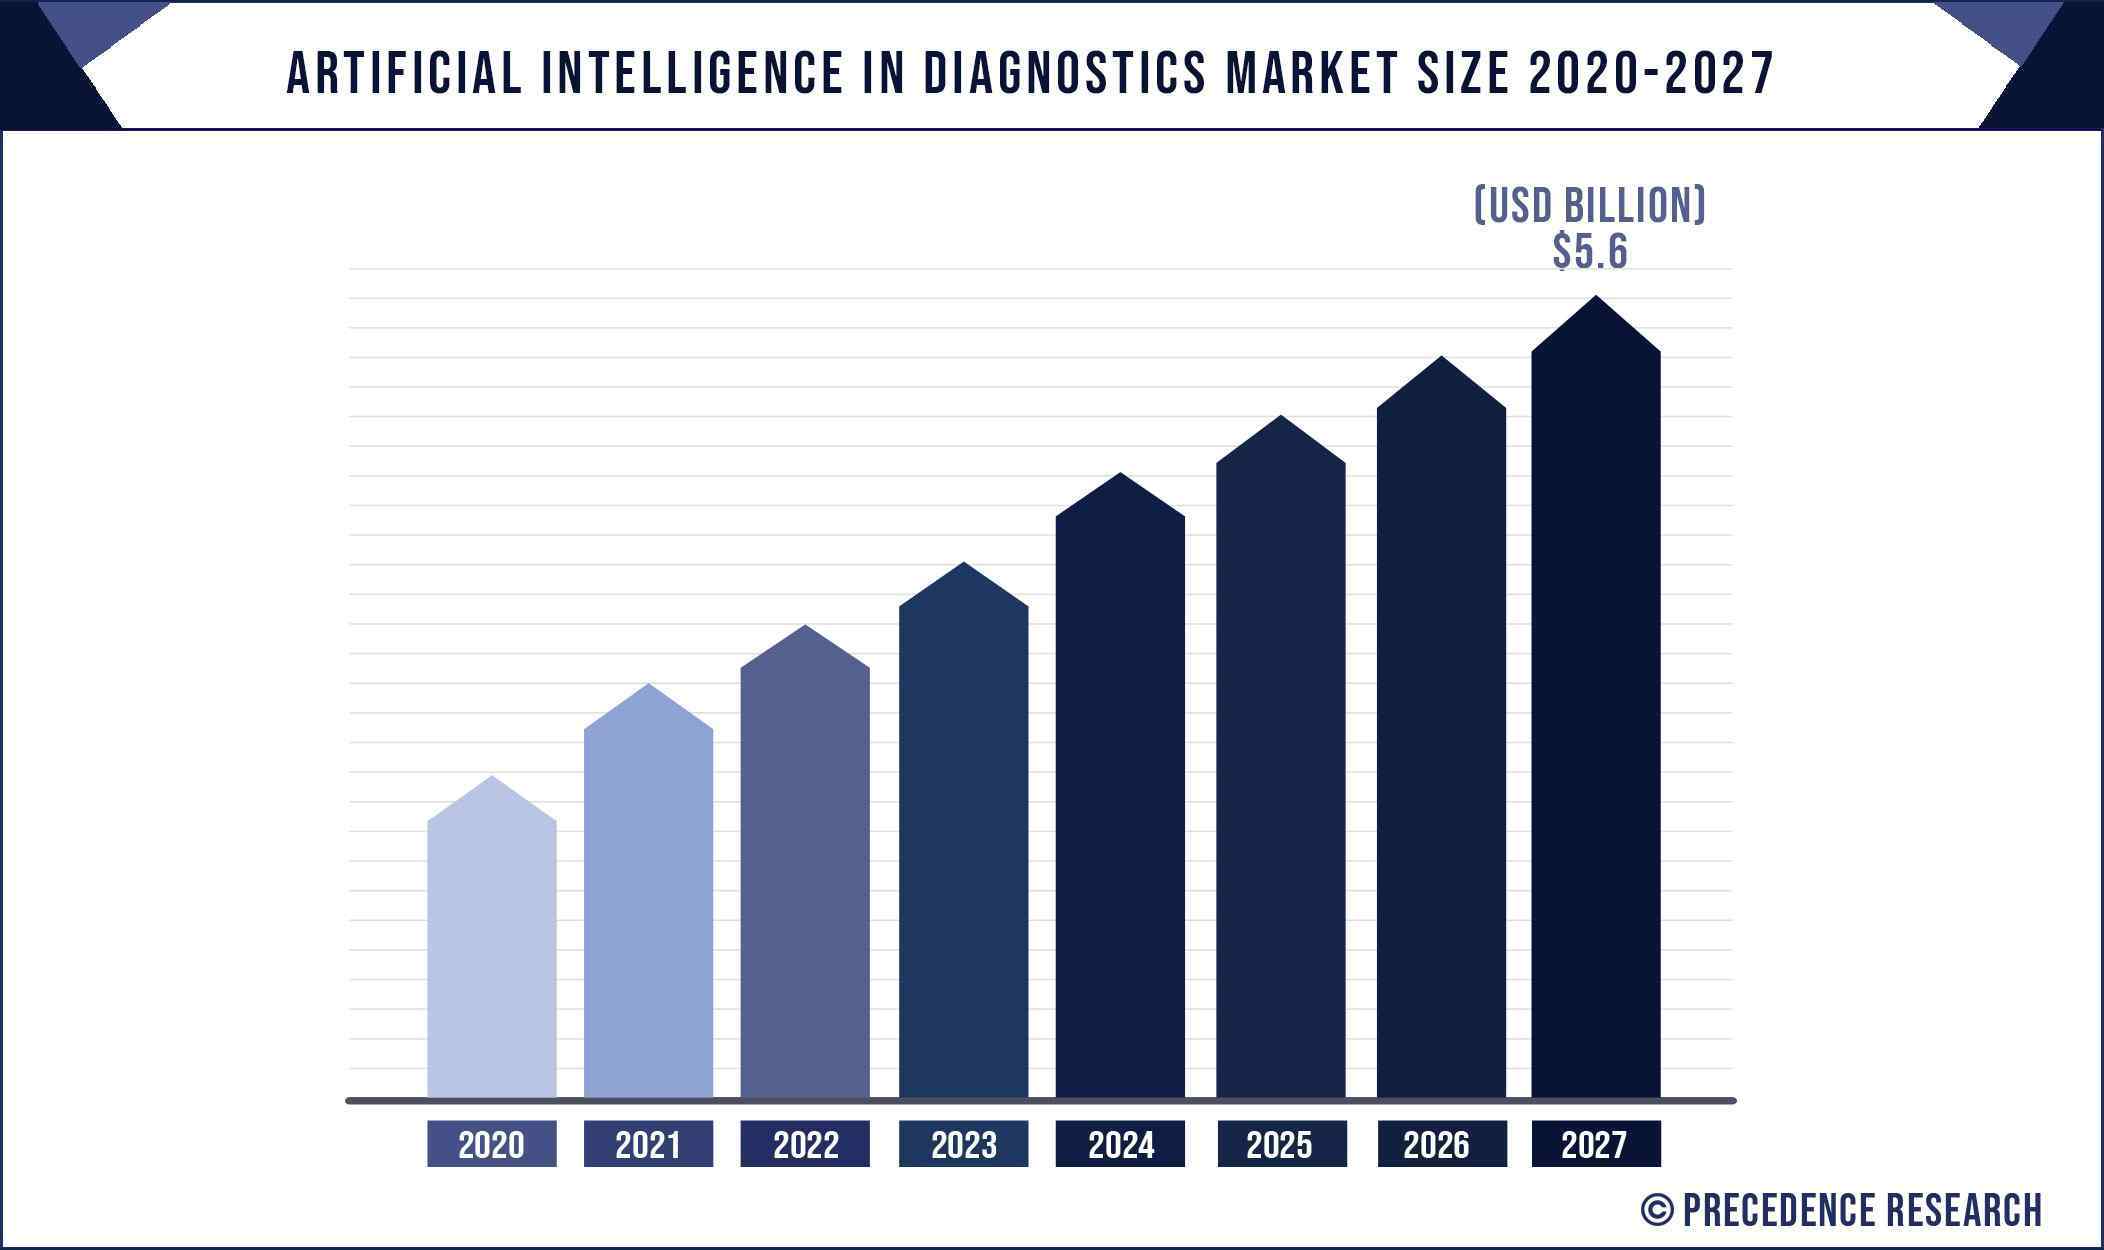 AI in Diagnostics Market Size 2020 to 2027